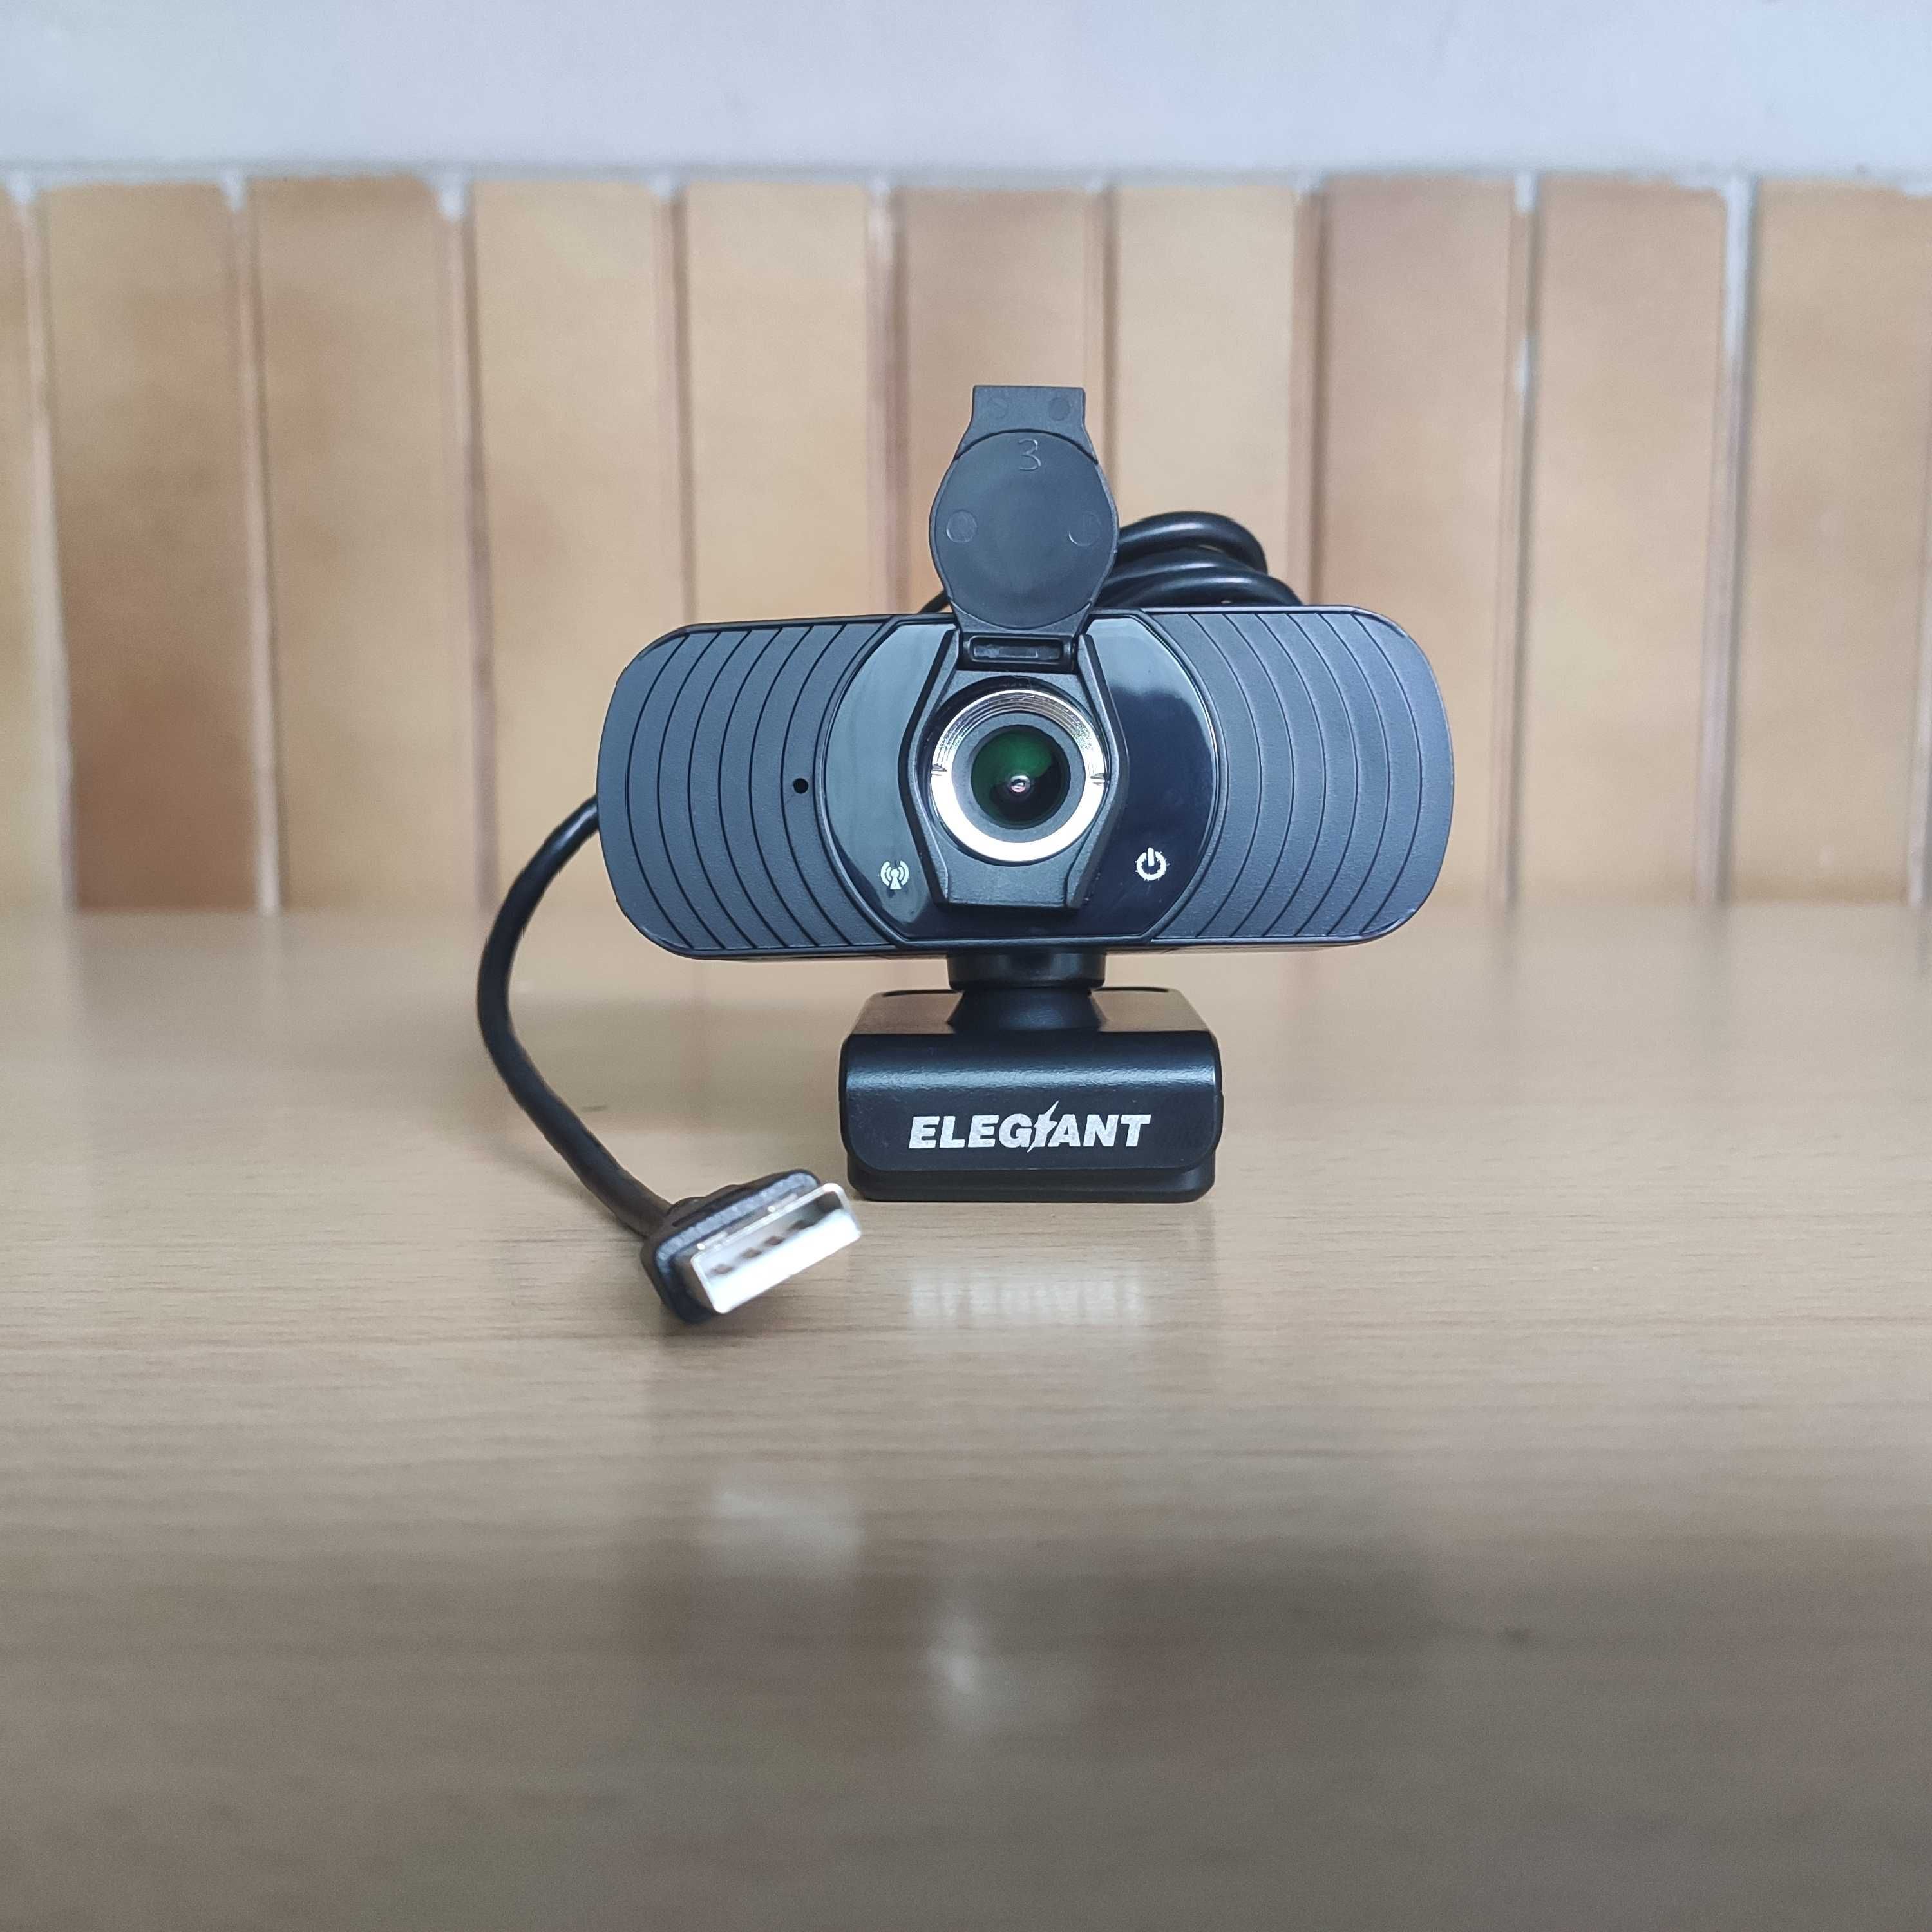 Webcam 1080p Micro Incorporado e Proteção de Privacidade